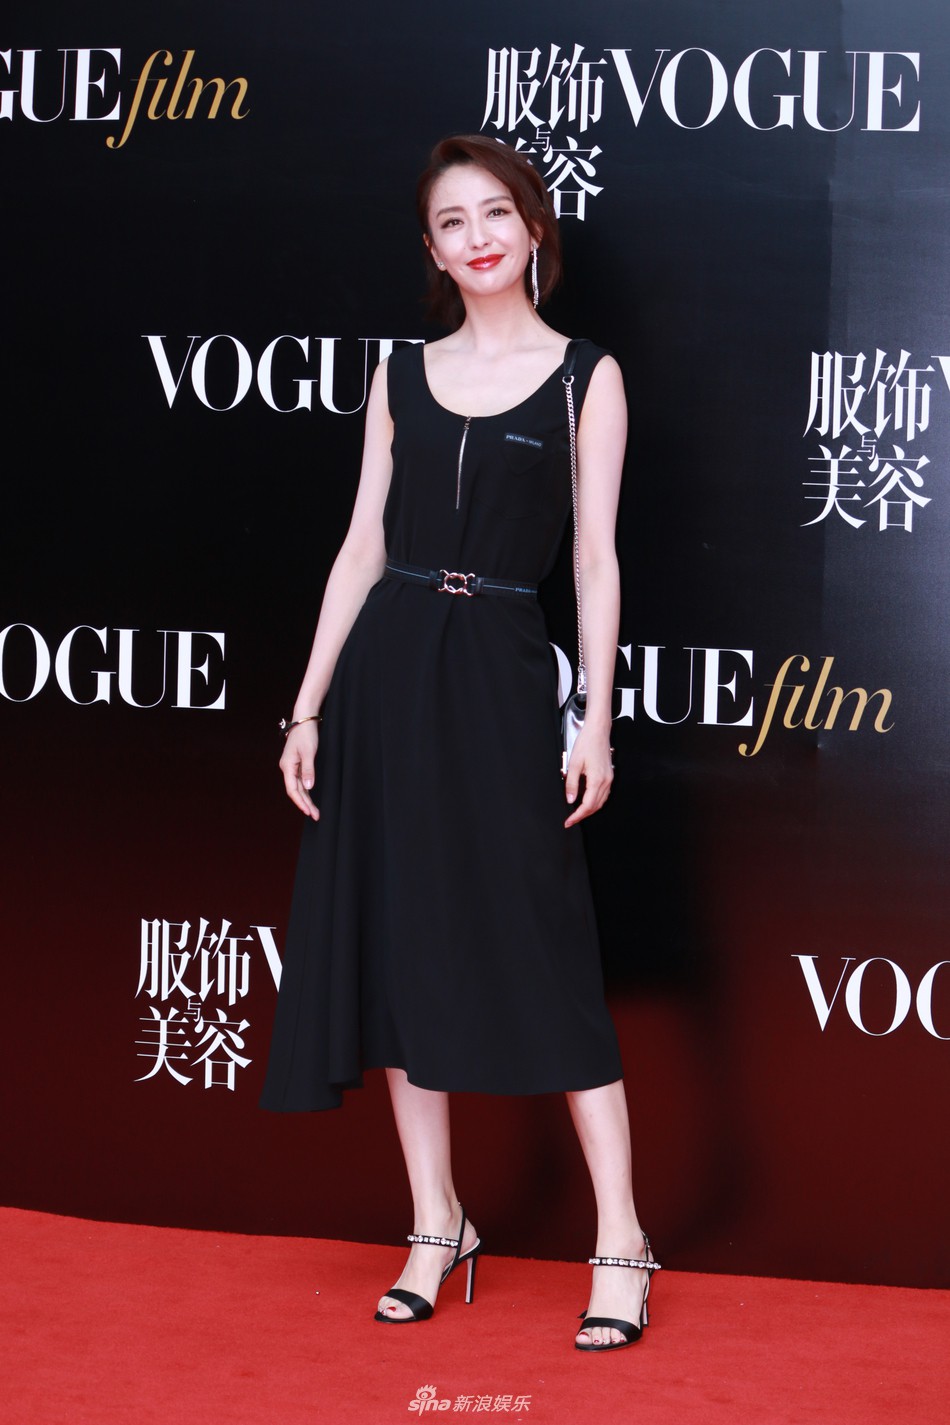 Thảm đỏ Vogue: Angela Baby trở thành tâm điểm vì đẹp xuất sắc, lấn át Dương Mịch - Lưu Thi Thi - Ảnh 21.